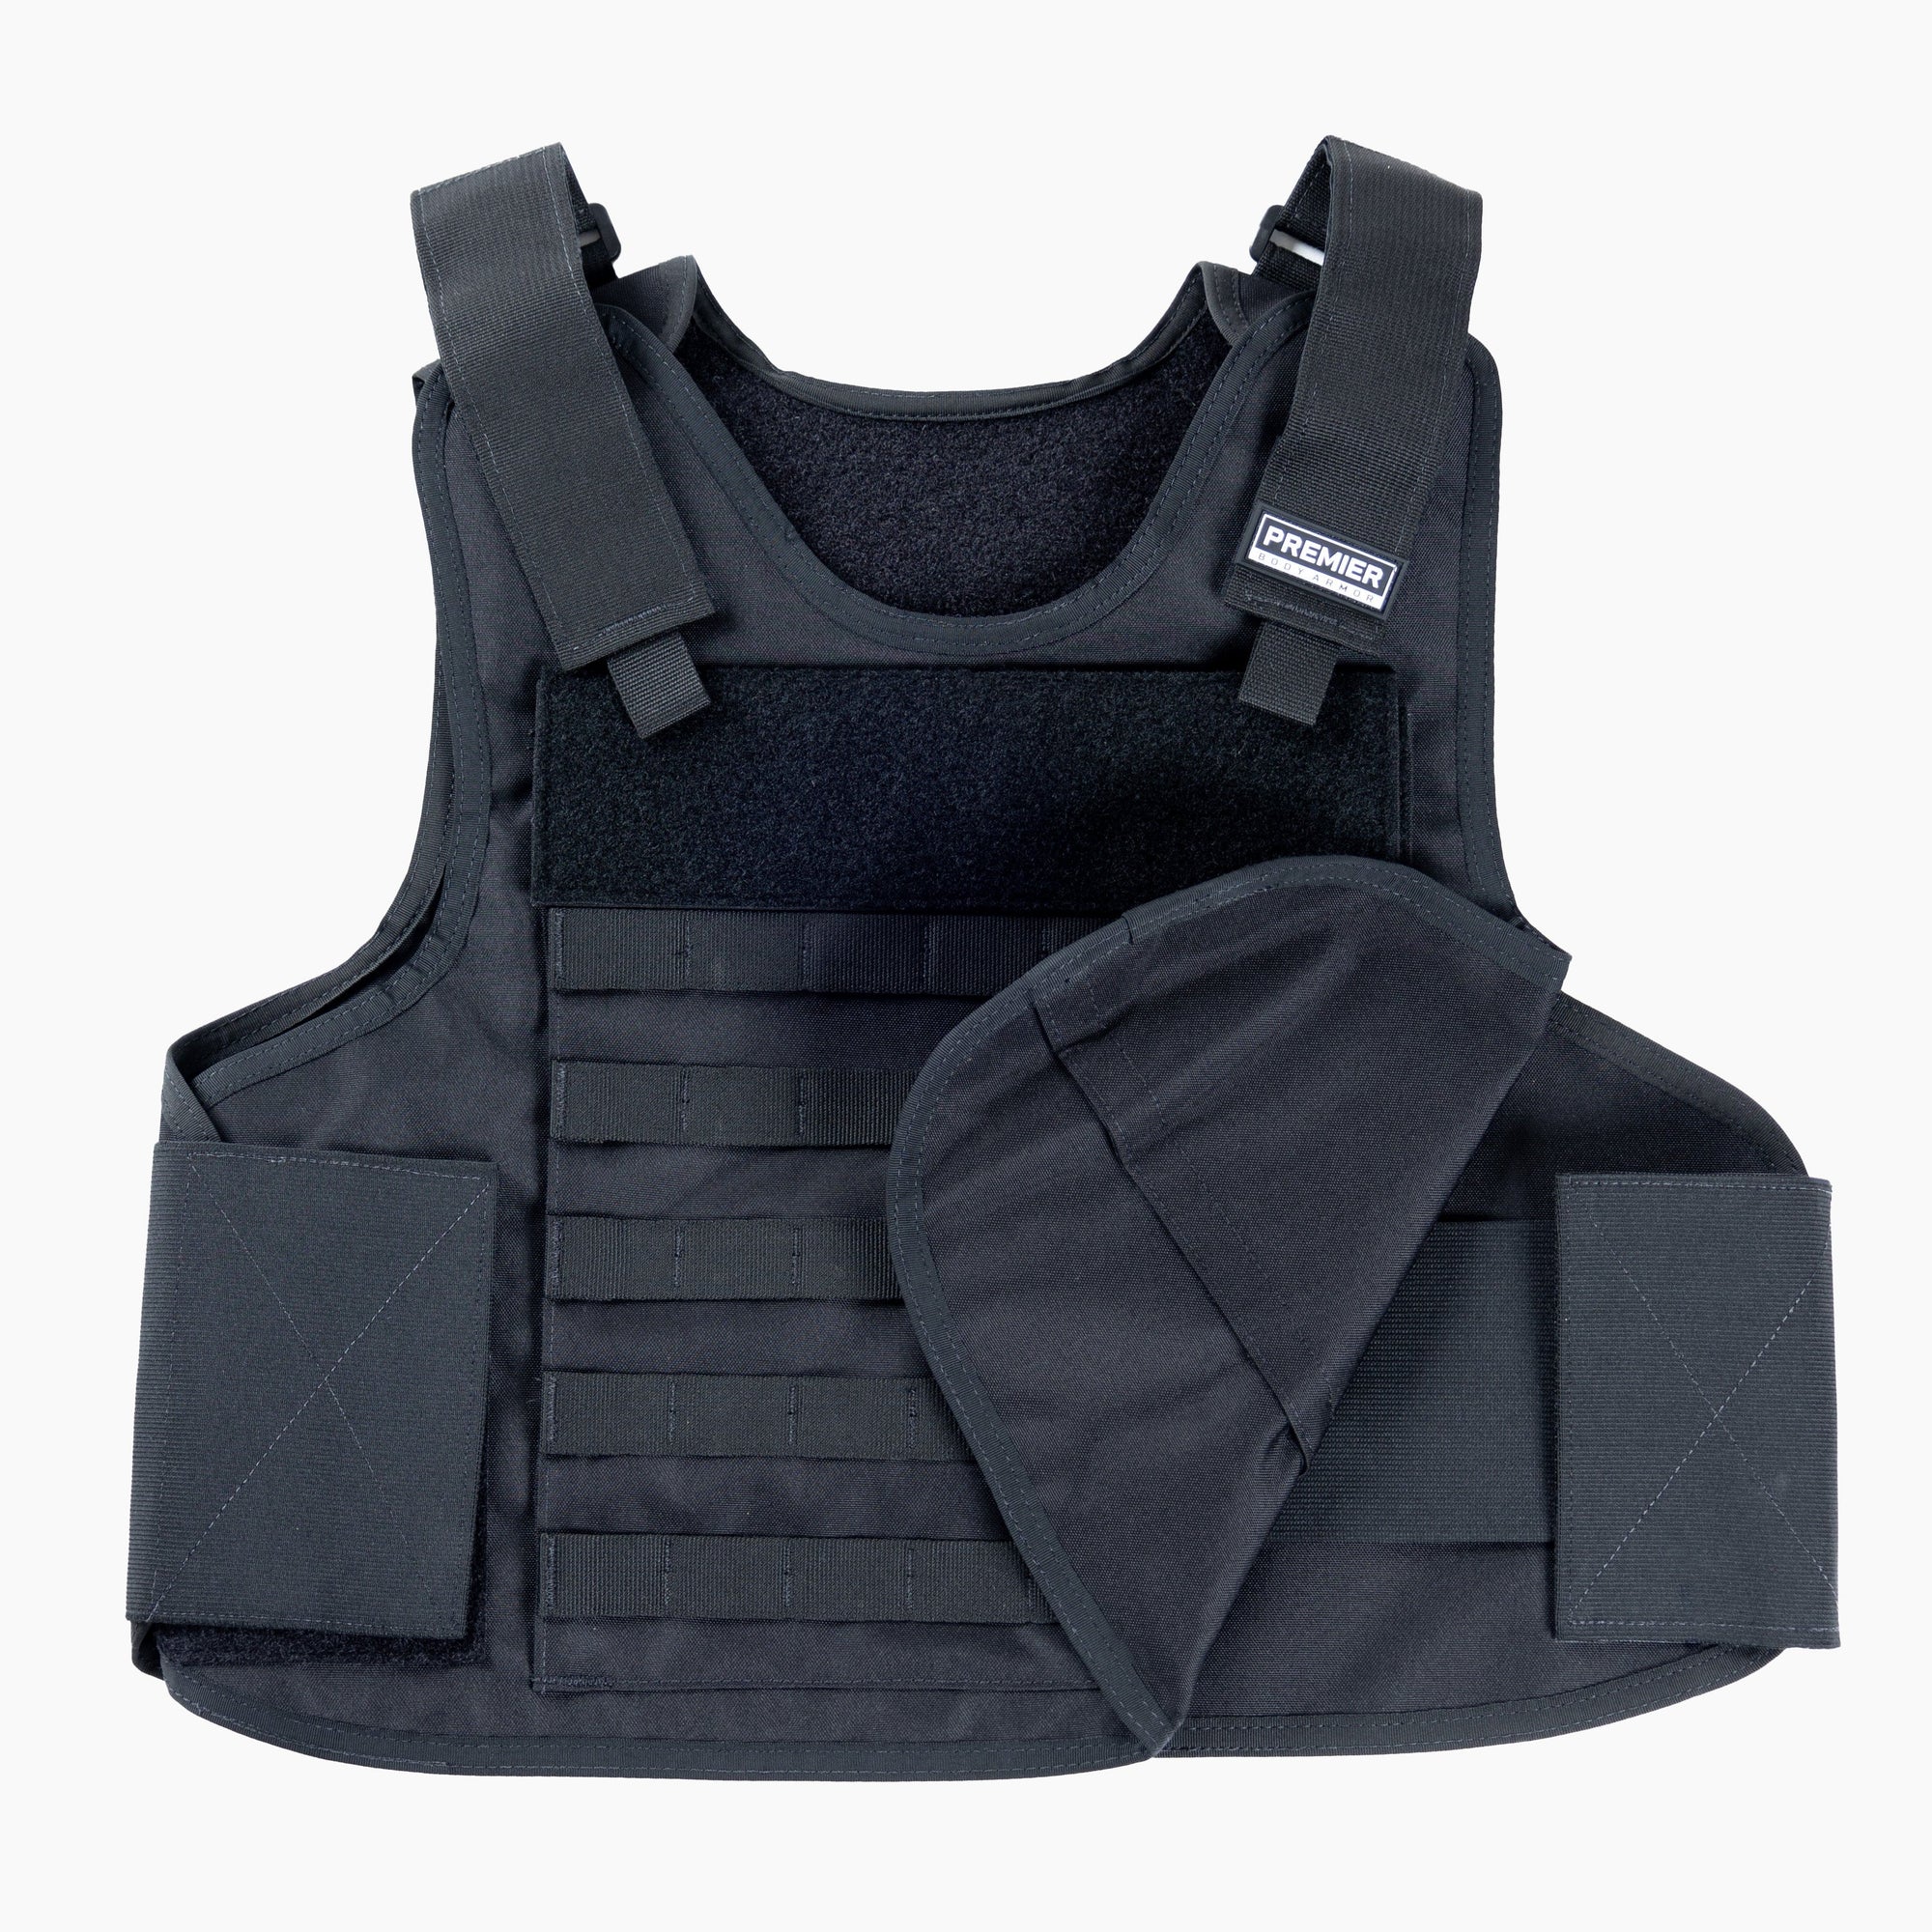 Hybrid Tactical Vest - Carrier Only